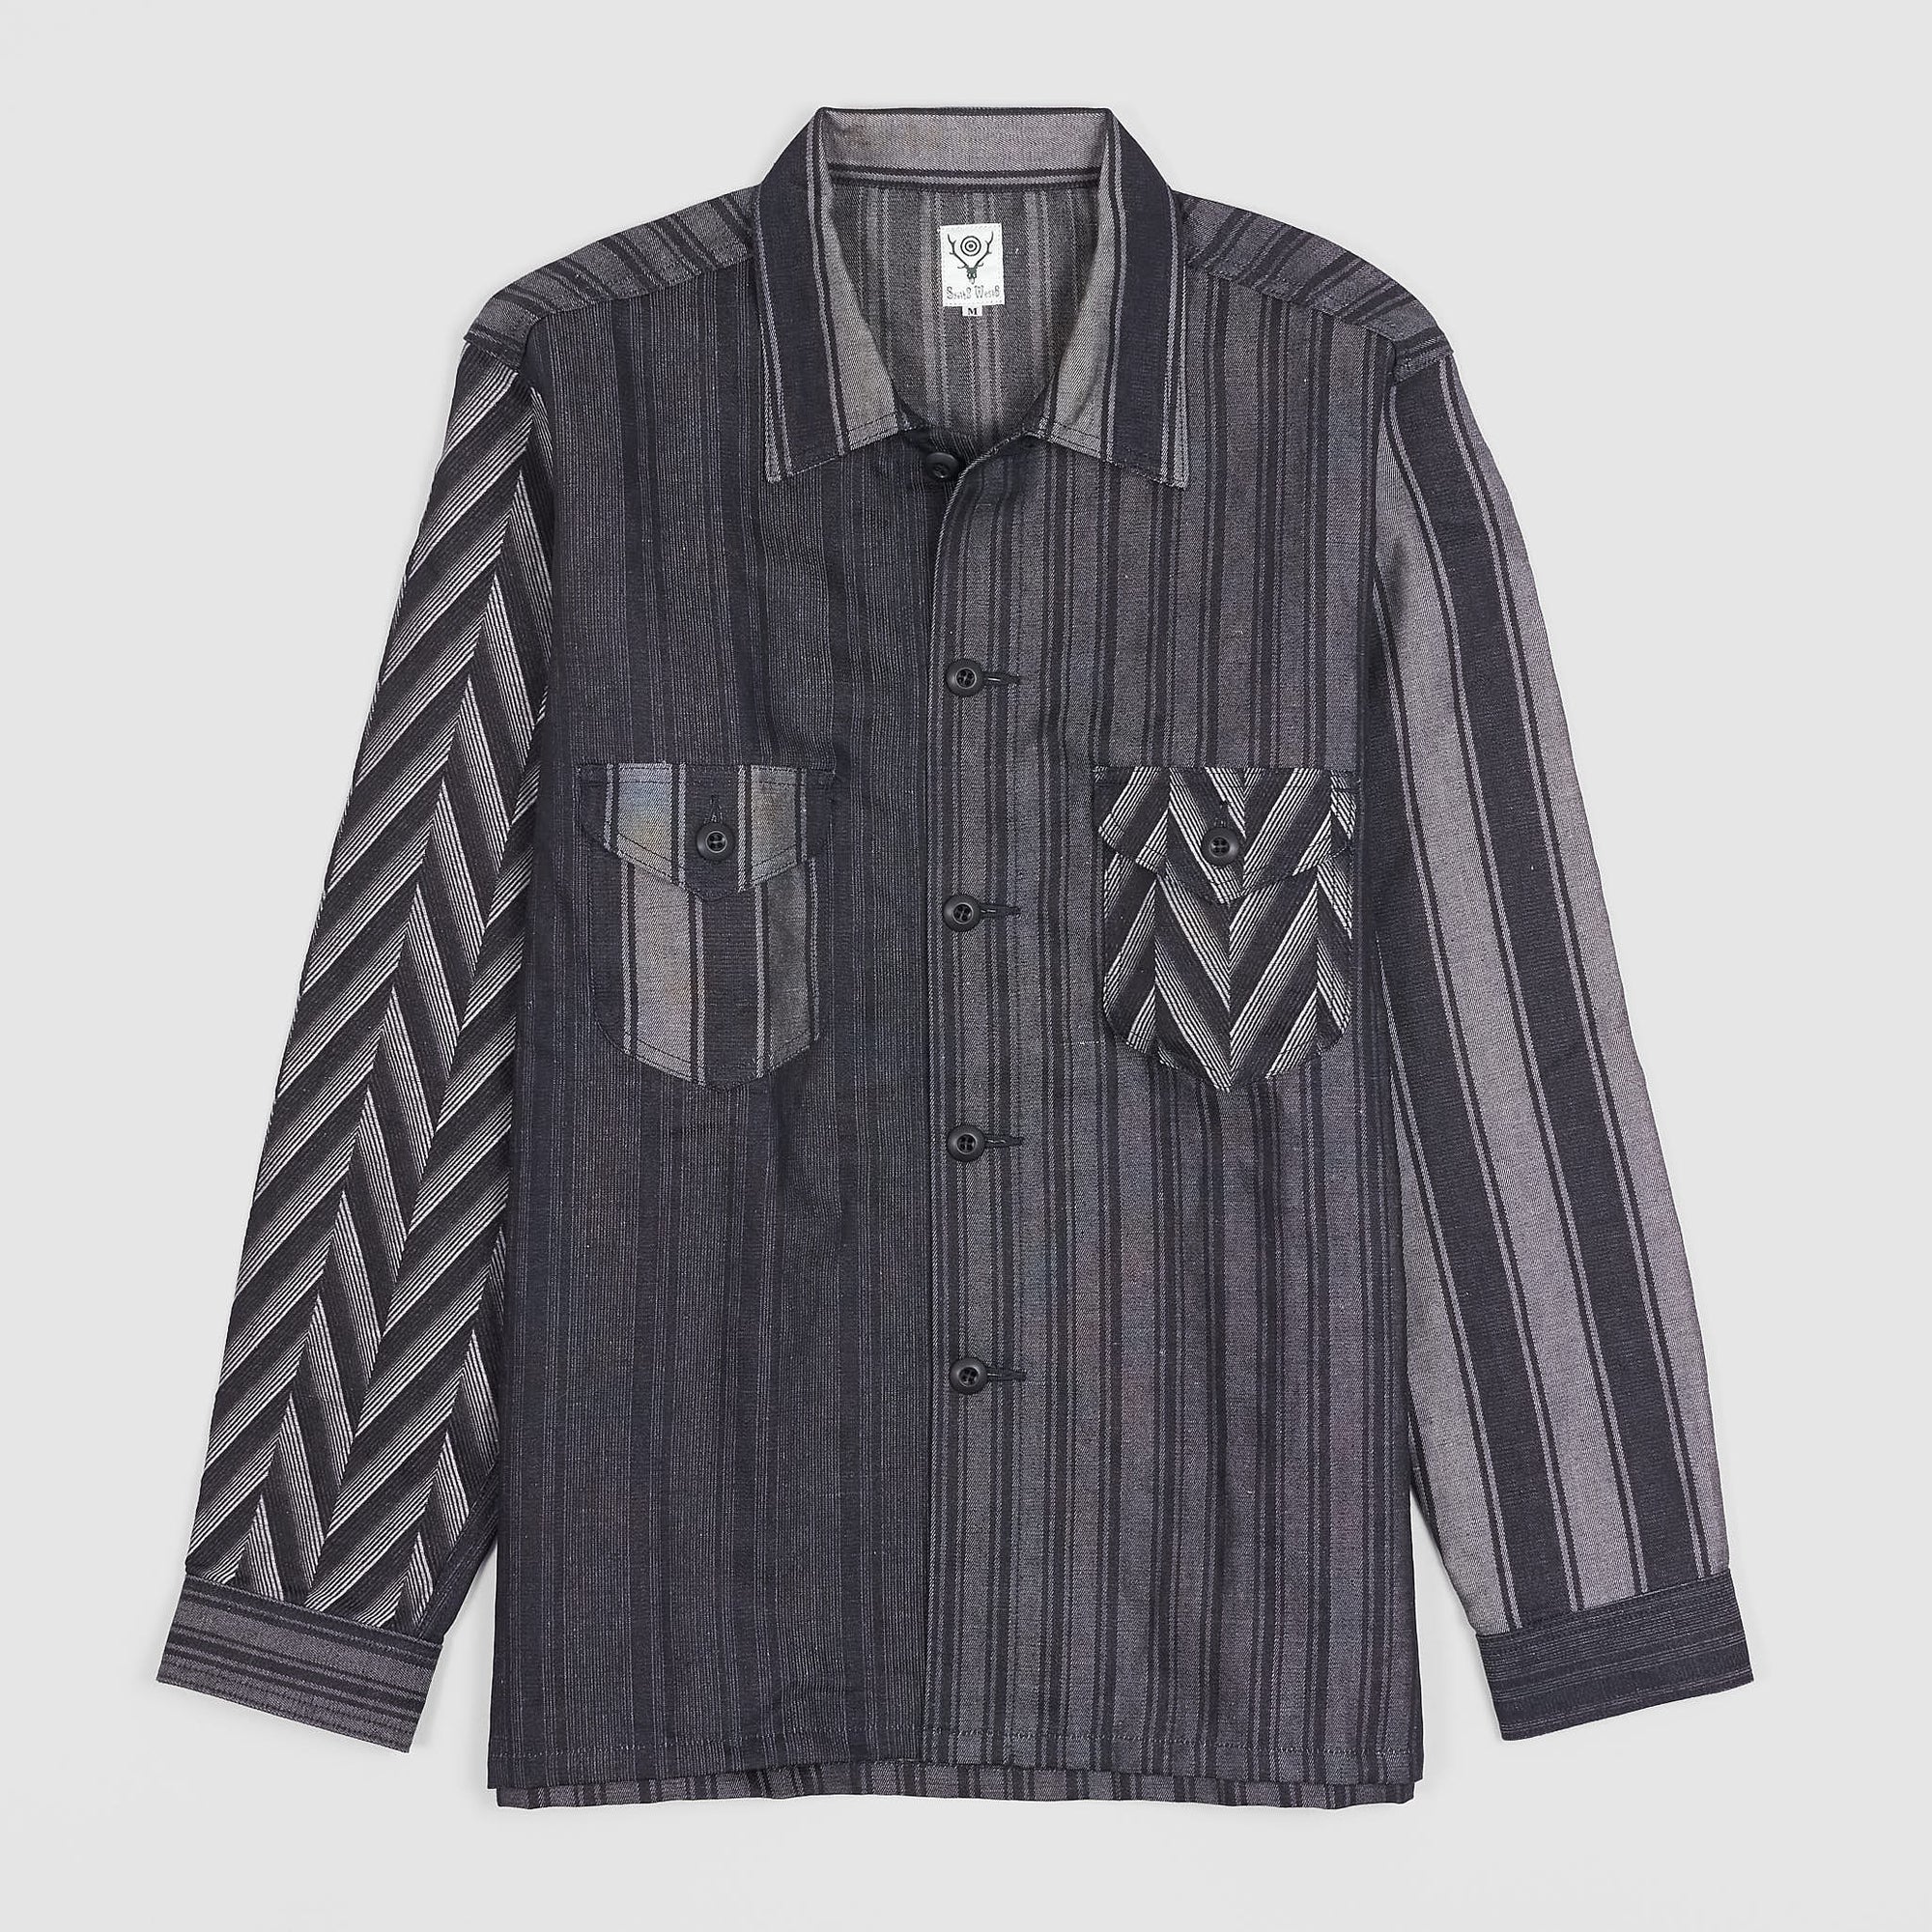 FDMTL Jacquard Woven Indigo Oversized Shirt - DeeCee style